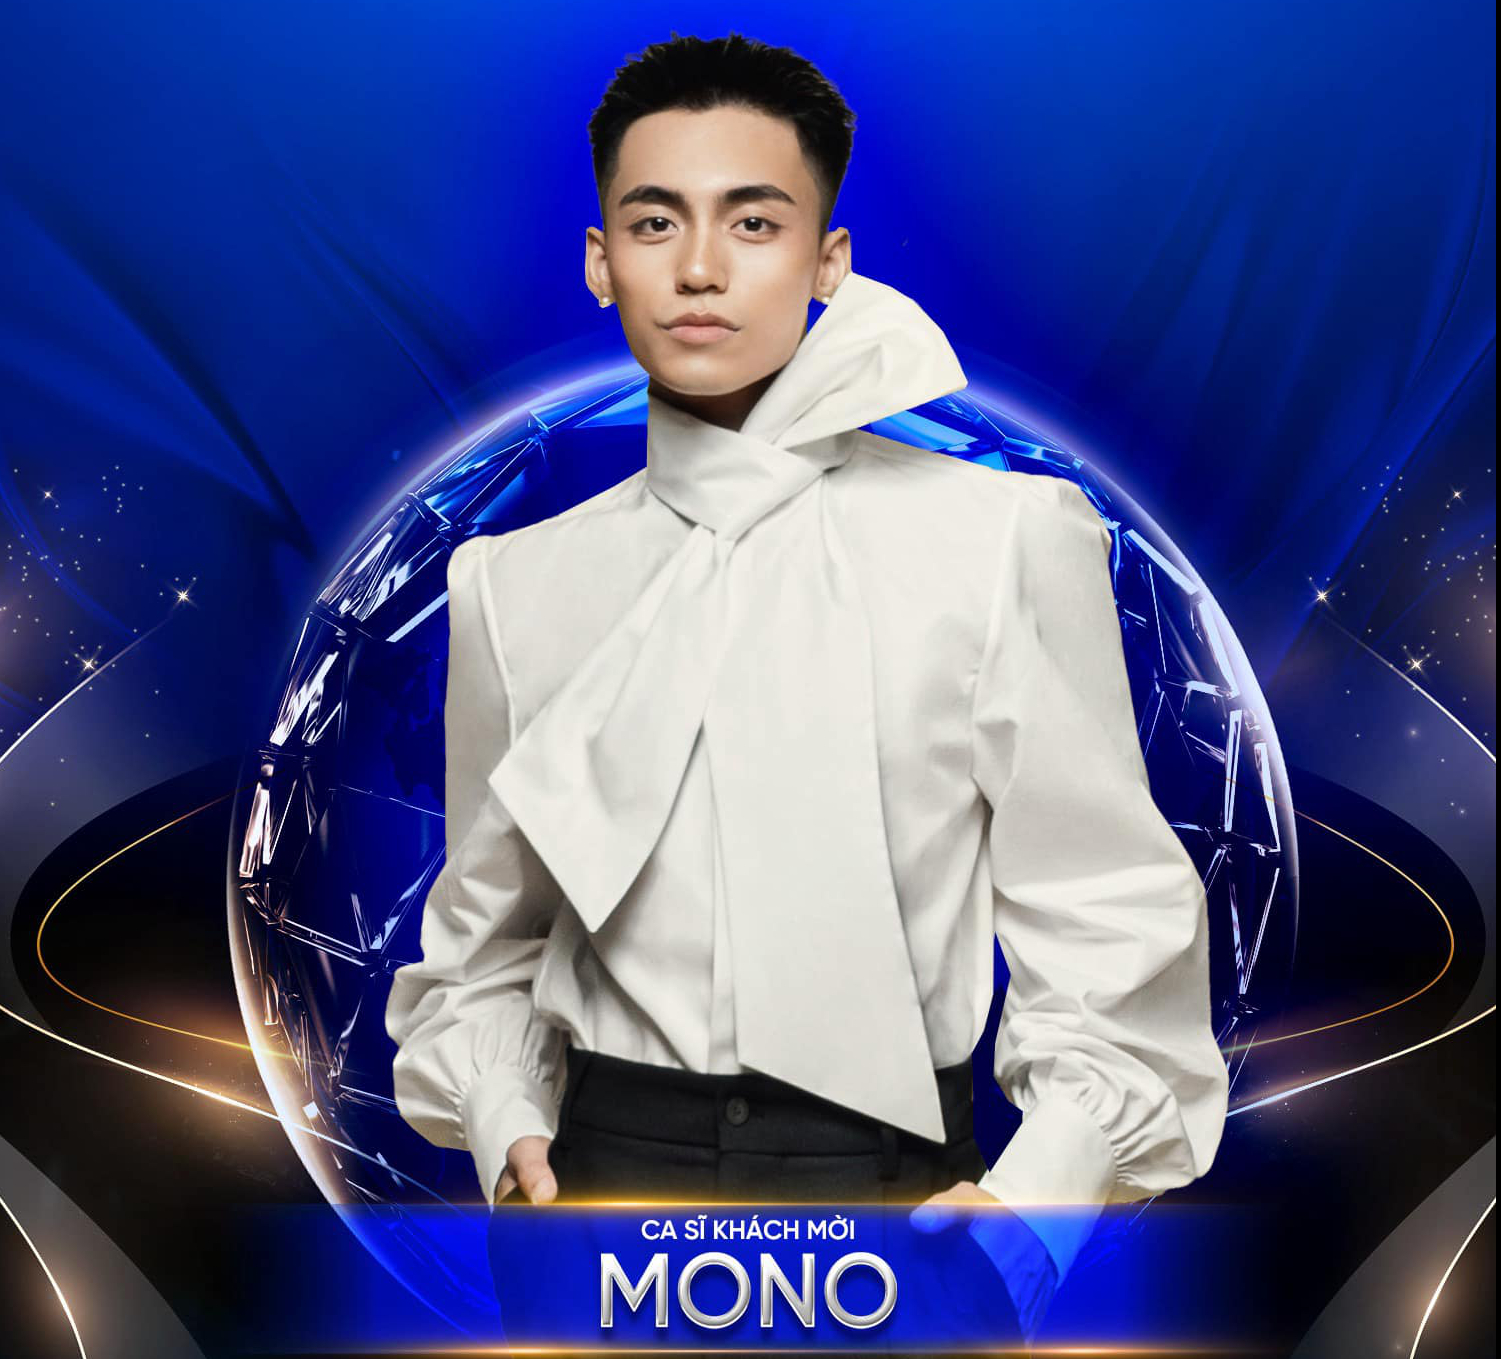 Mono xác nhận trình diễn cho Chung kết Miss Earth 2023 - Ảnh 3.